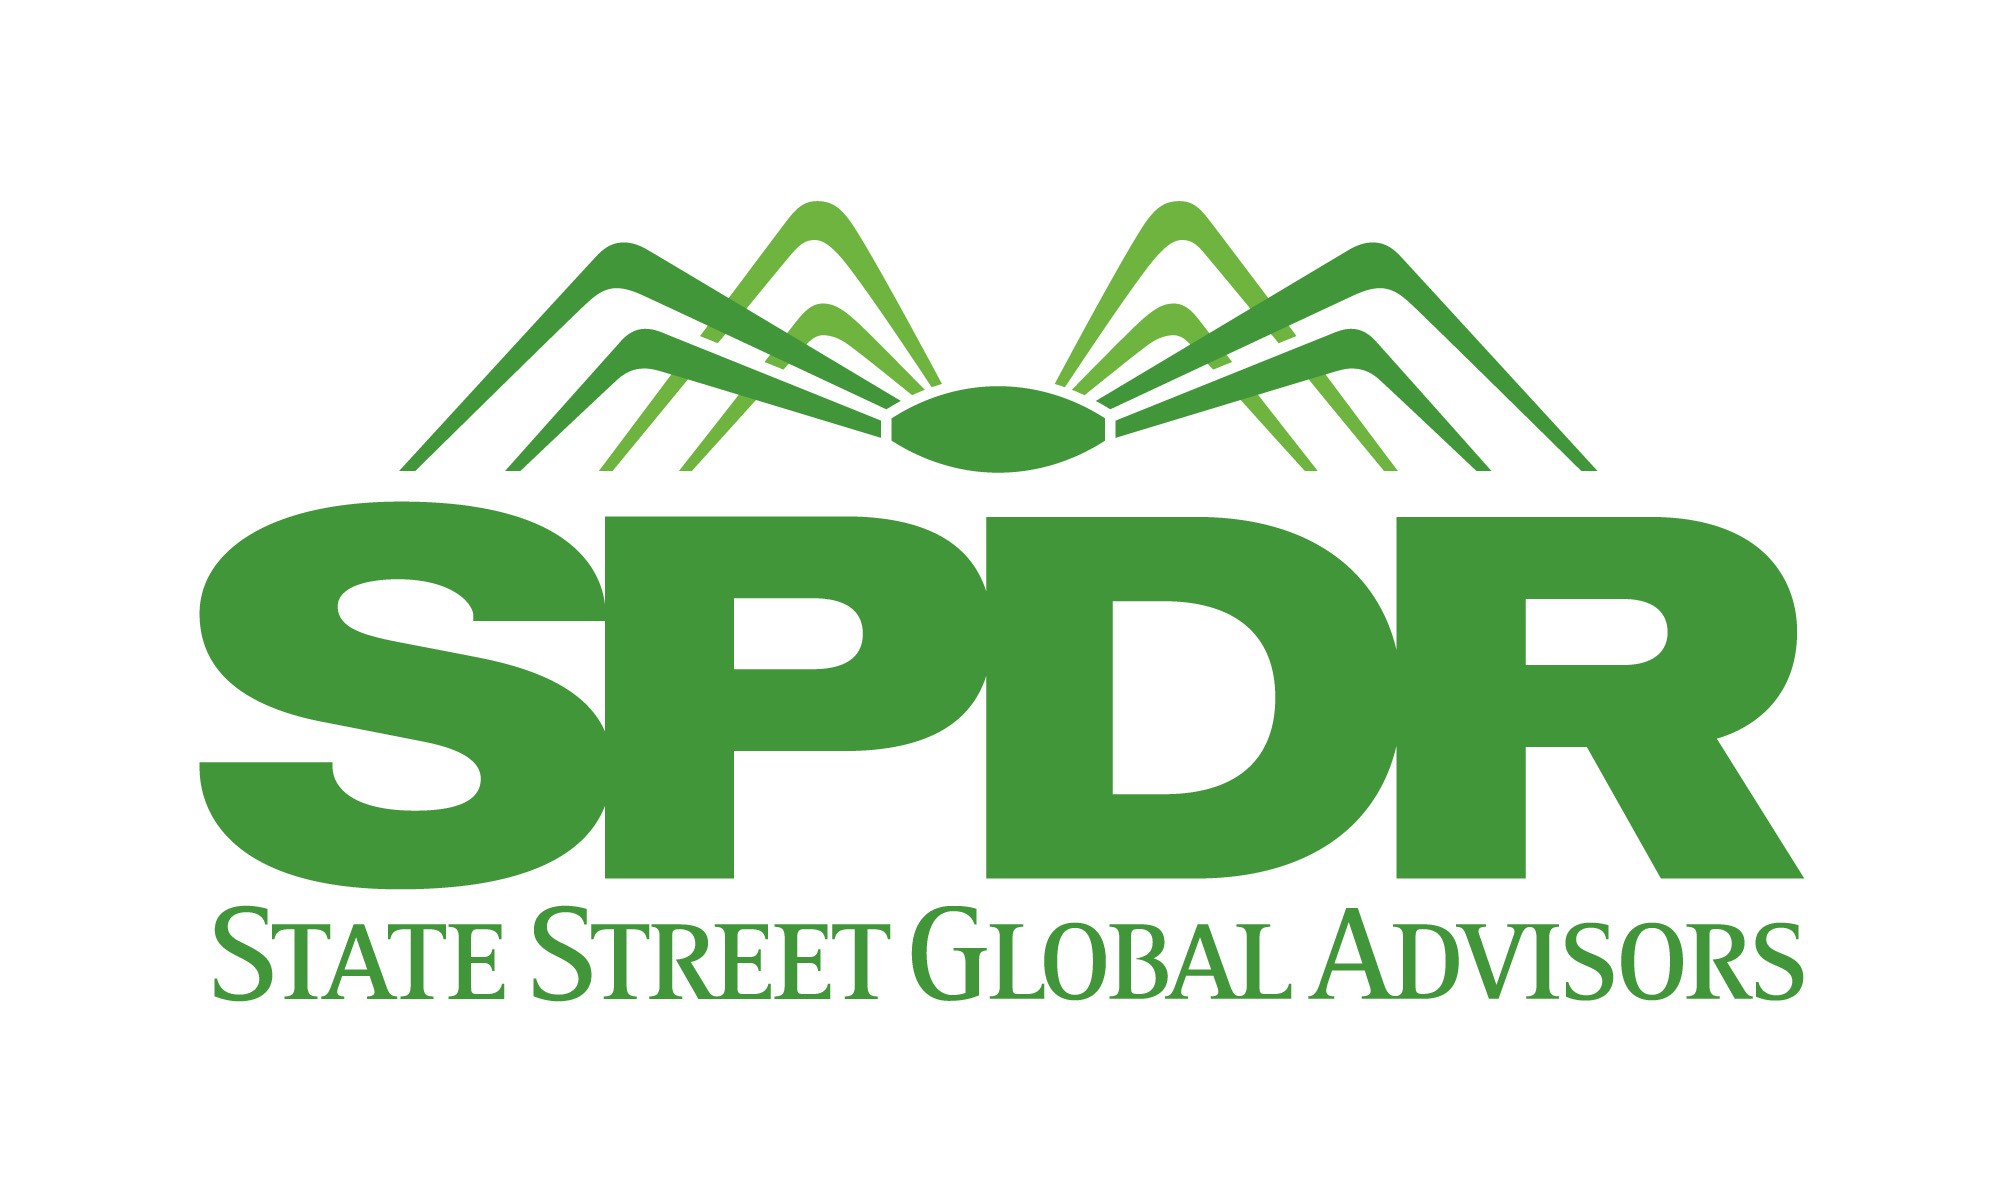 State Street Global Advisors (SSGA), kapitalförvaltningsverksamheten inom State Street Corp, utsett Bernhard Wenger som chef för SPDR ETF i Schweiz.